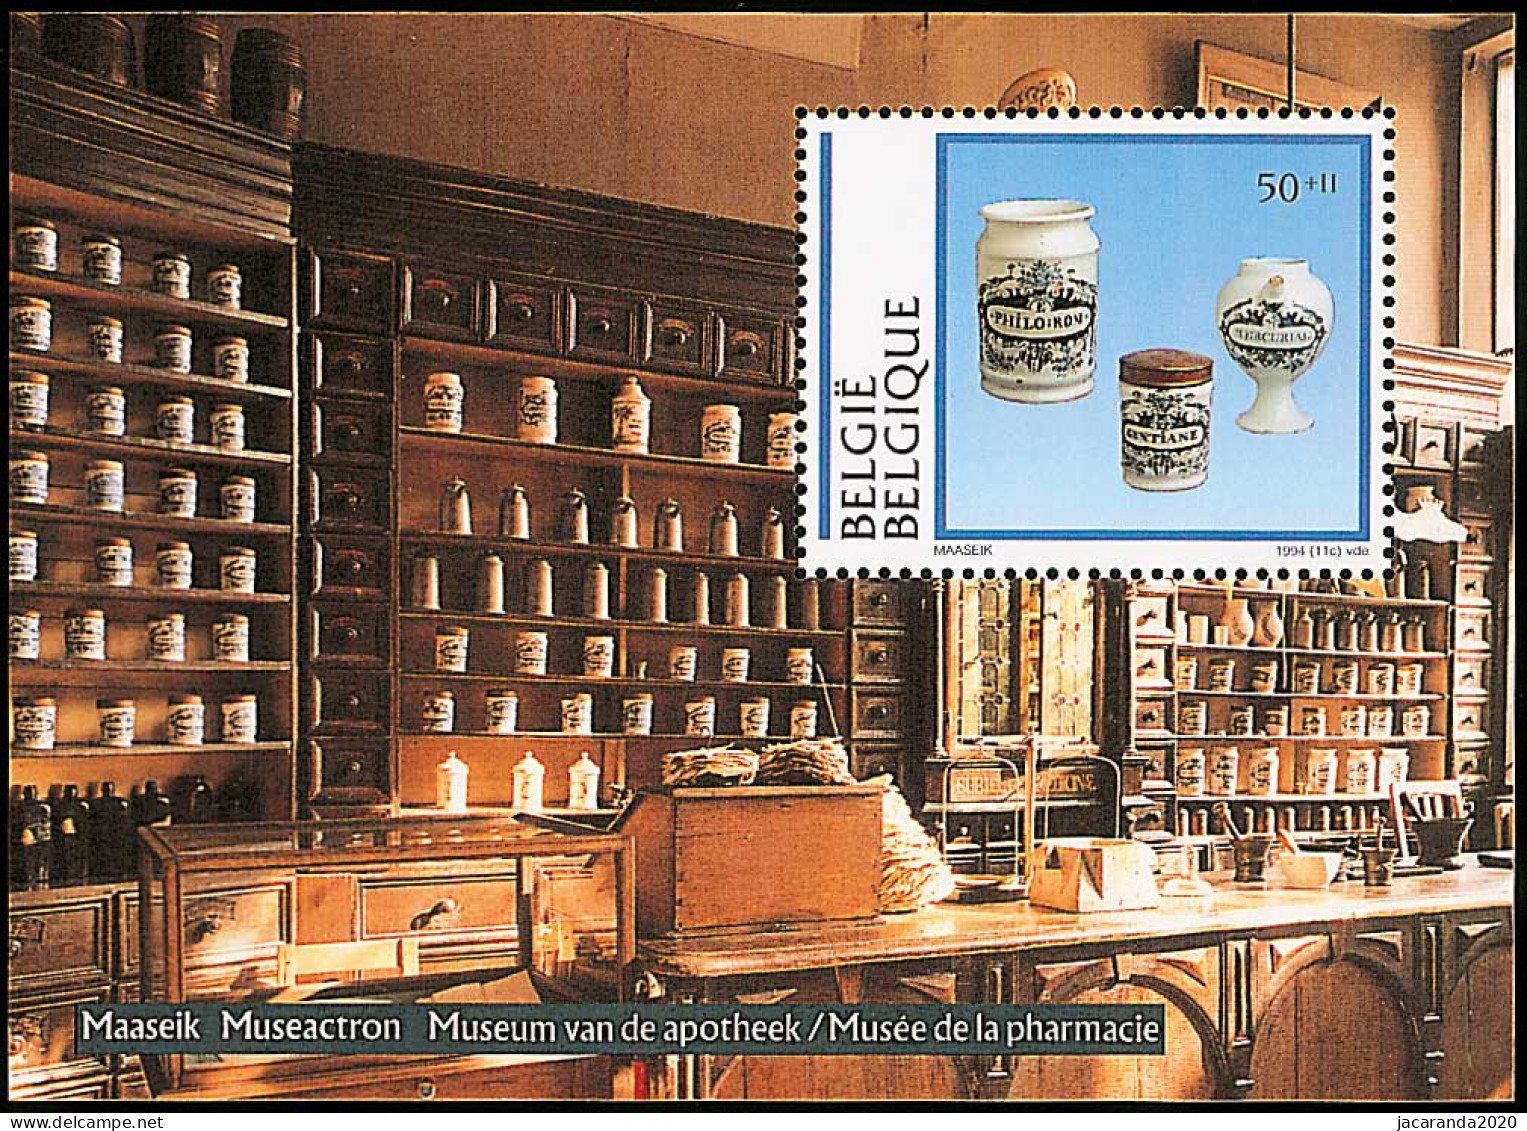 België BL 69 - Culturele - Belgisch Porselein - Porcelaine Belge (2568) - MNH - 1961-2001